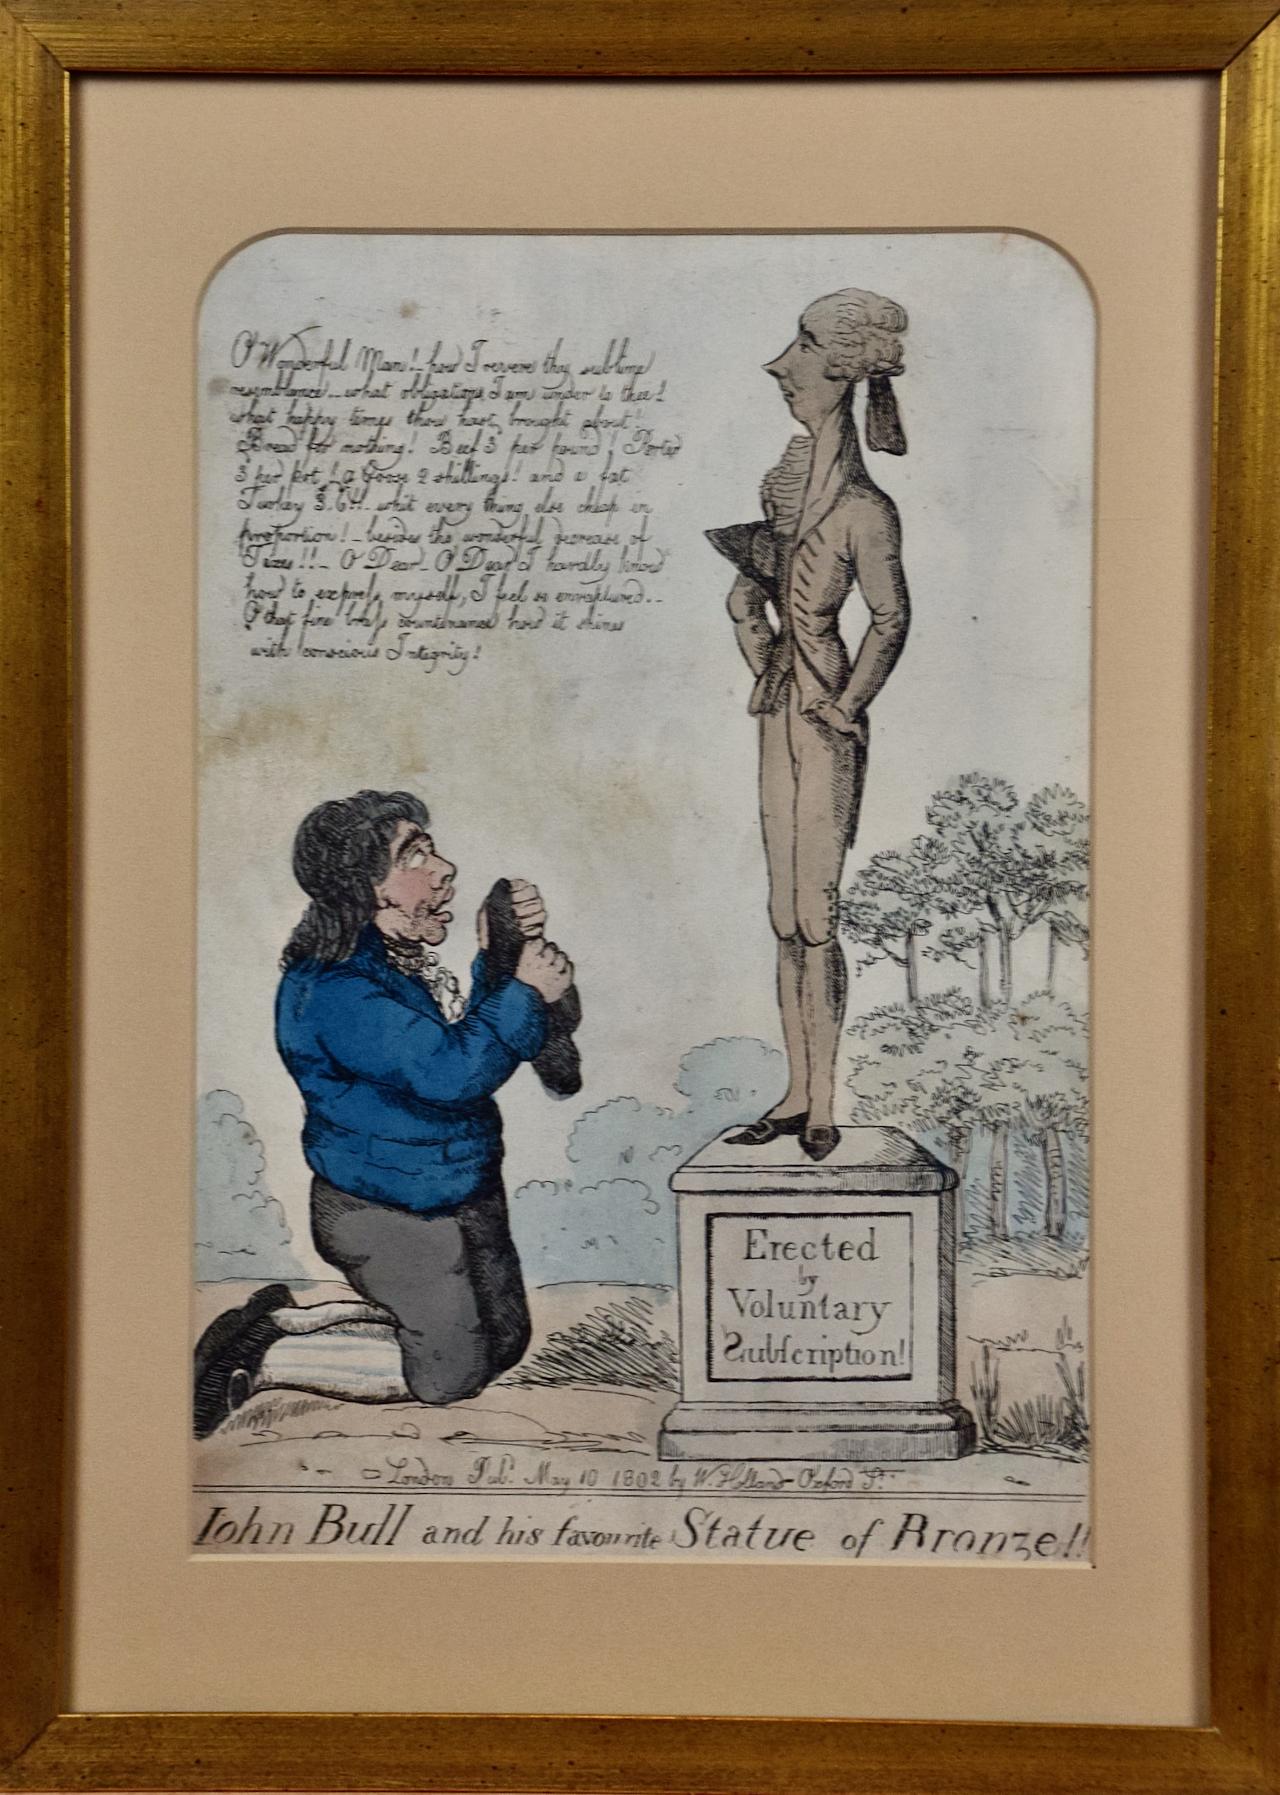 Une gravure satirique du début du 19e siècle représentant John Bull agenouillé devant William Pitt